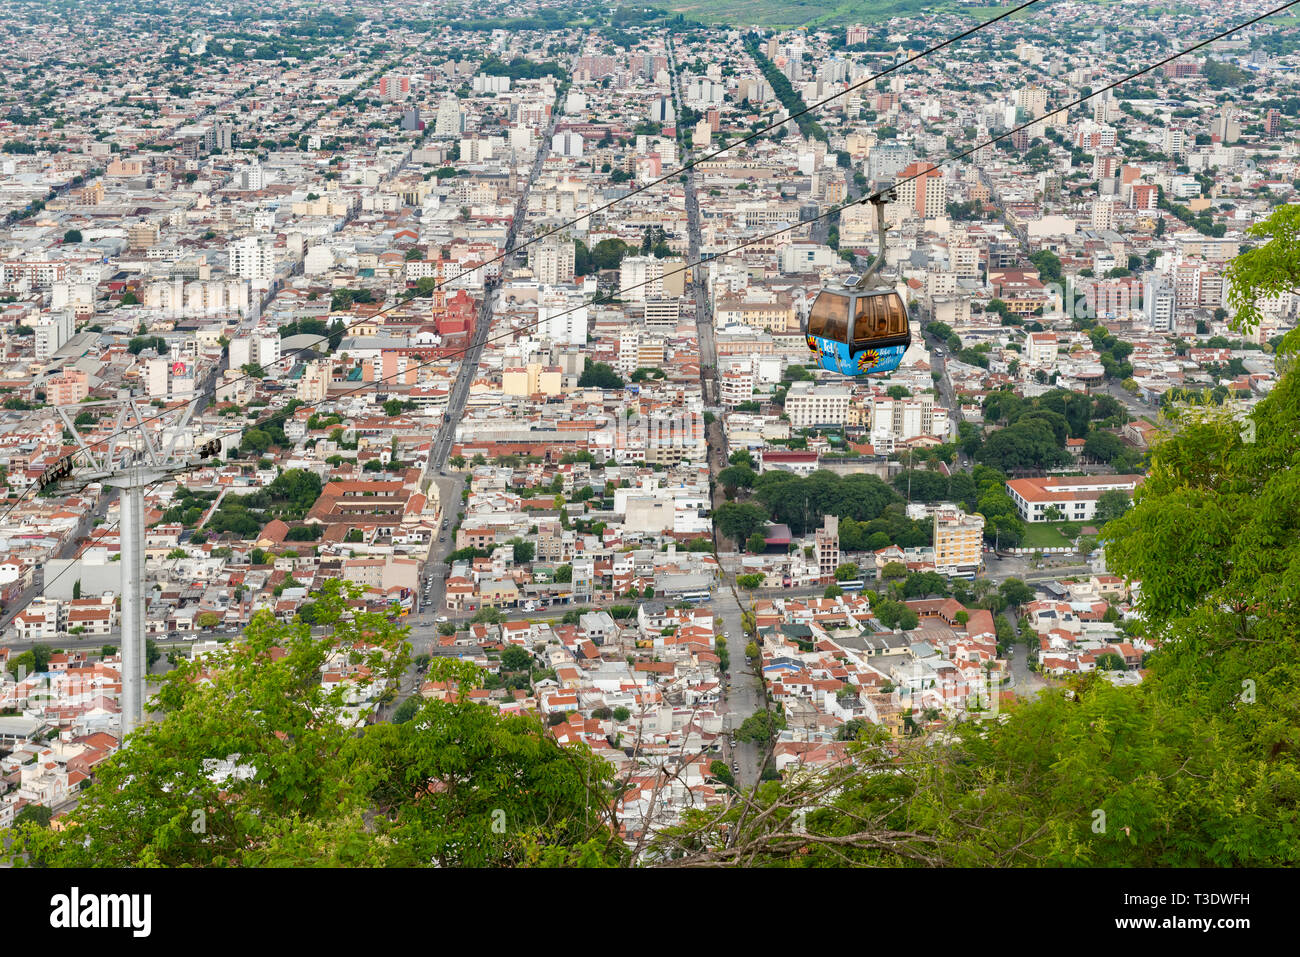 Images de la Salta Tram (Teleferico) téléphériques au-dessus de la ville, du haut de la colline de San Bernardo. Banque D'Images